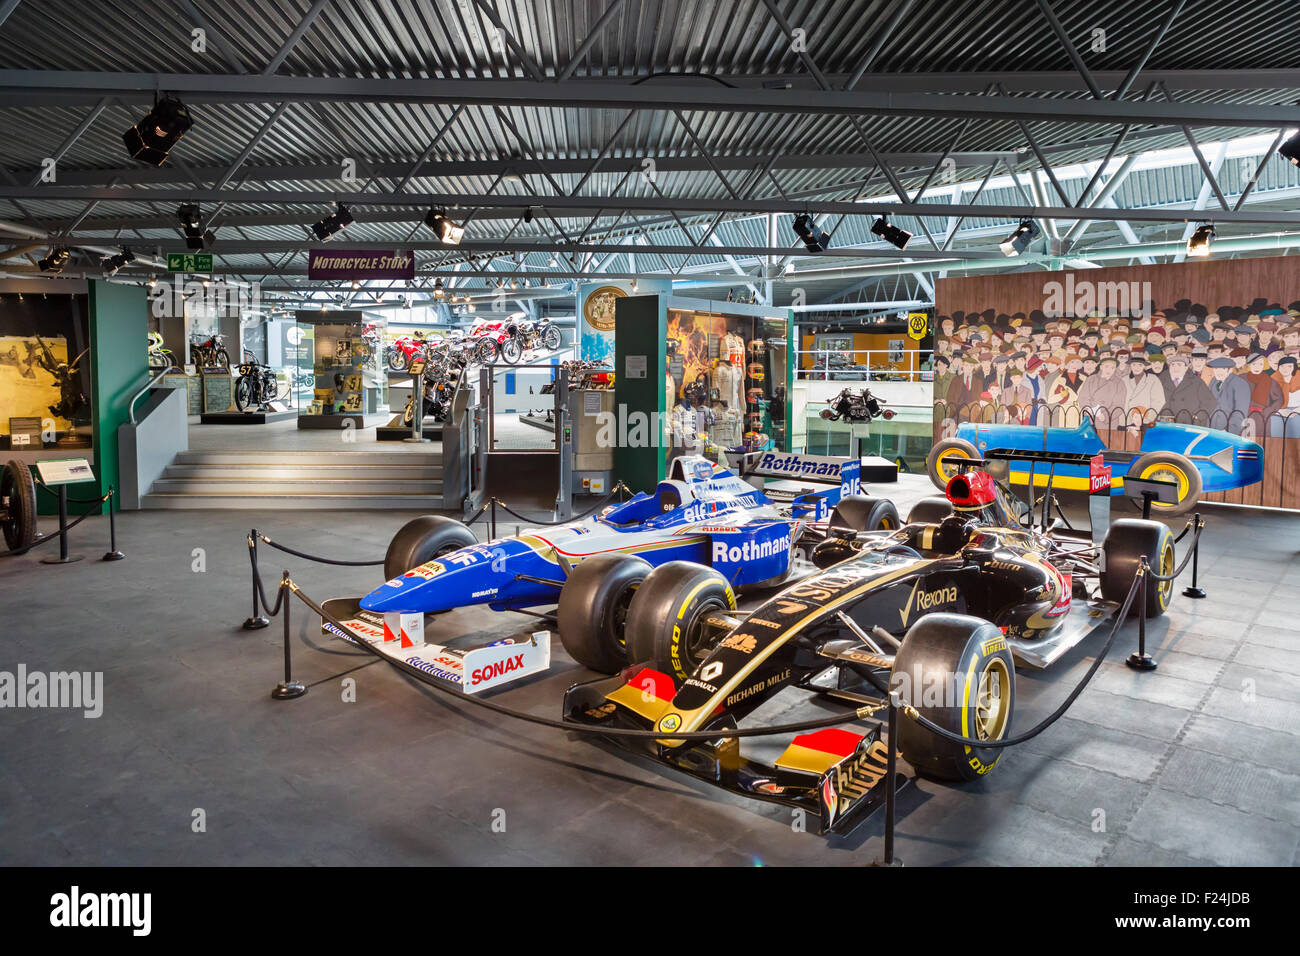 Formula 1 racing cars on display at the National Motor Museum, Beaulieu, Hampshire, England UK Stock Photo